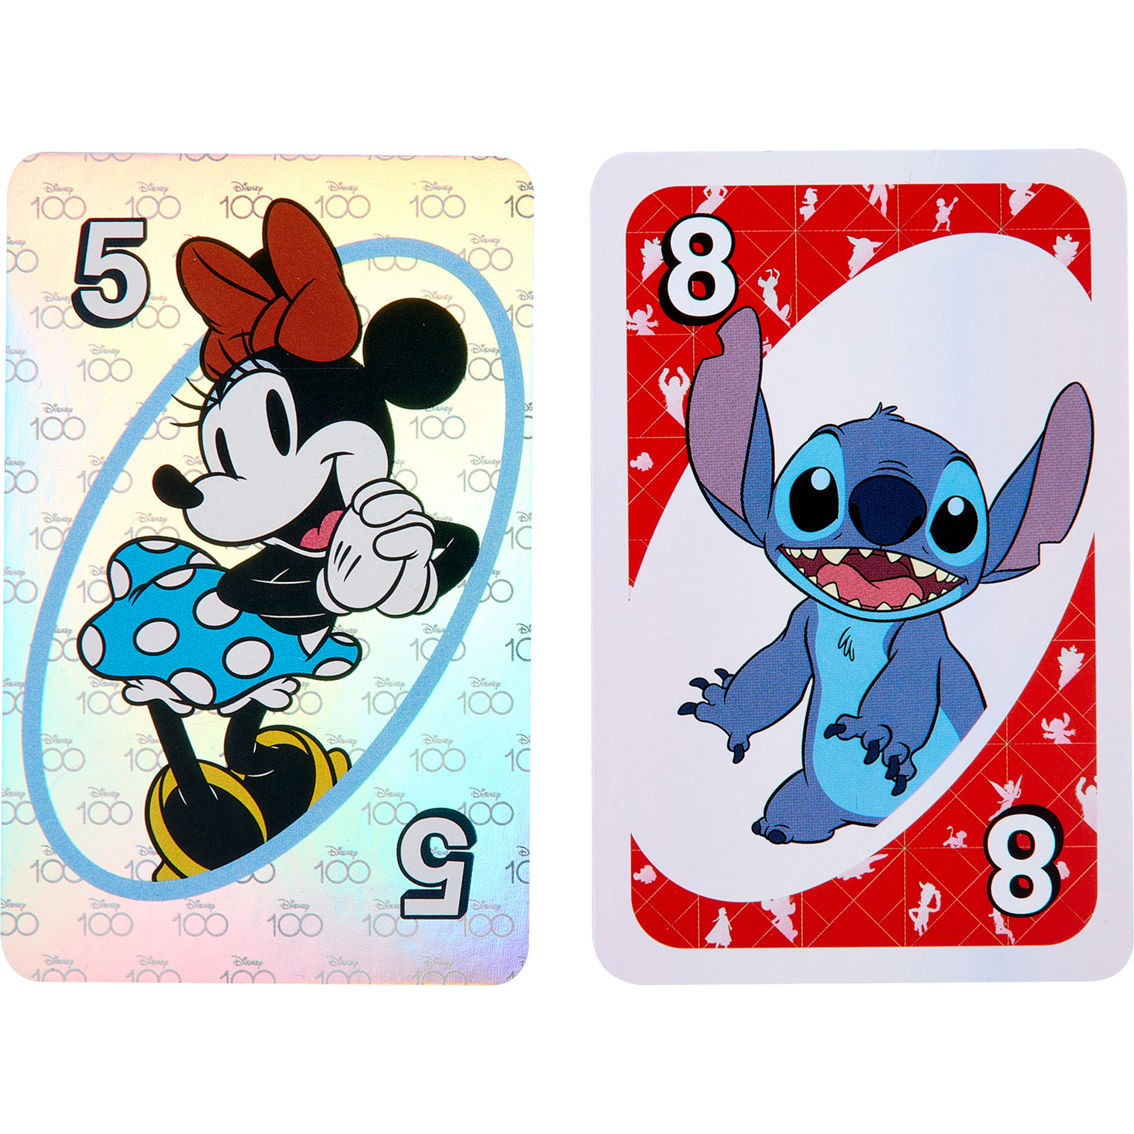 Mattel UNO Disney 100 Card Game - Image 5 of 6